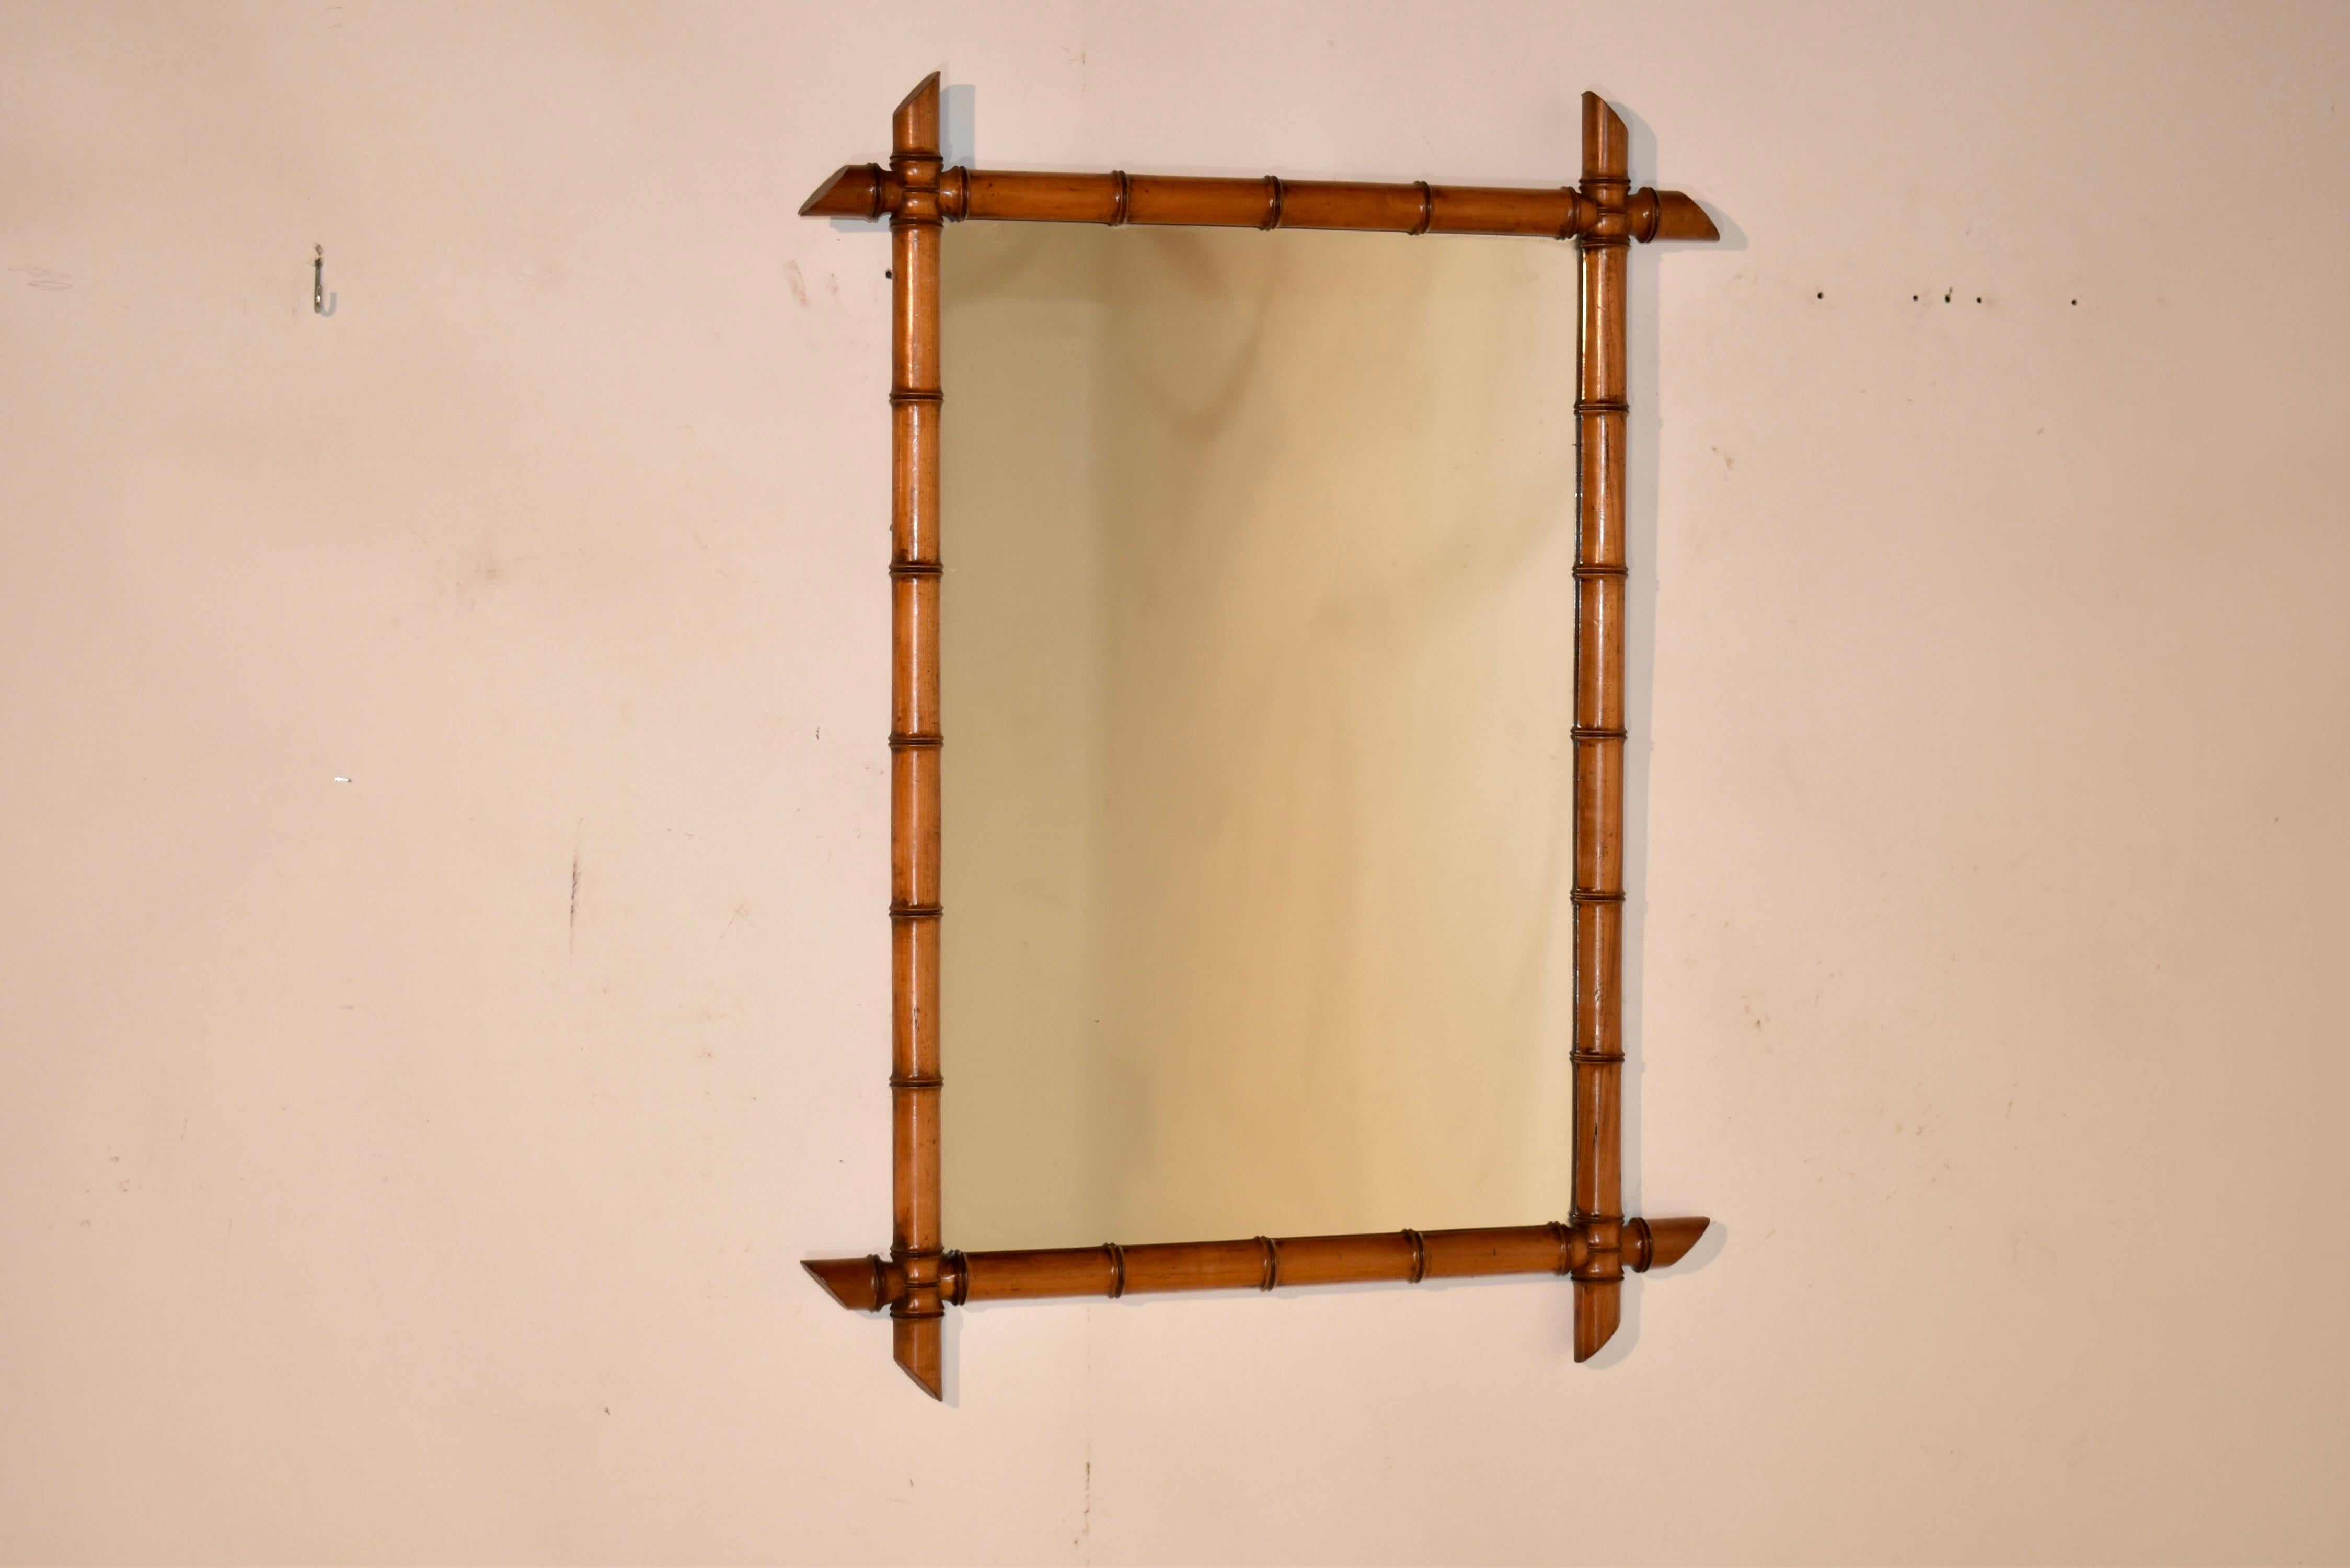 Miroir en faux bambou de la fin du XIXe siècle, fabriqué en France à partir de cerisier. Le cadre est tourné à la main pour avoir l'apparence du bambou, mais il est fabriqué en cerisier riche et conserve sa couleur et sa patine d'origine. Les coins